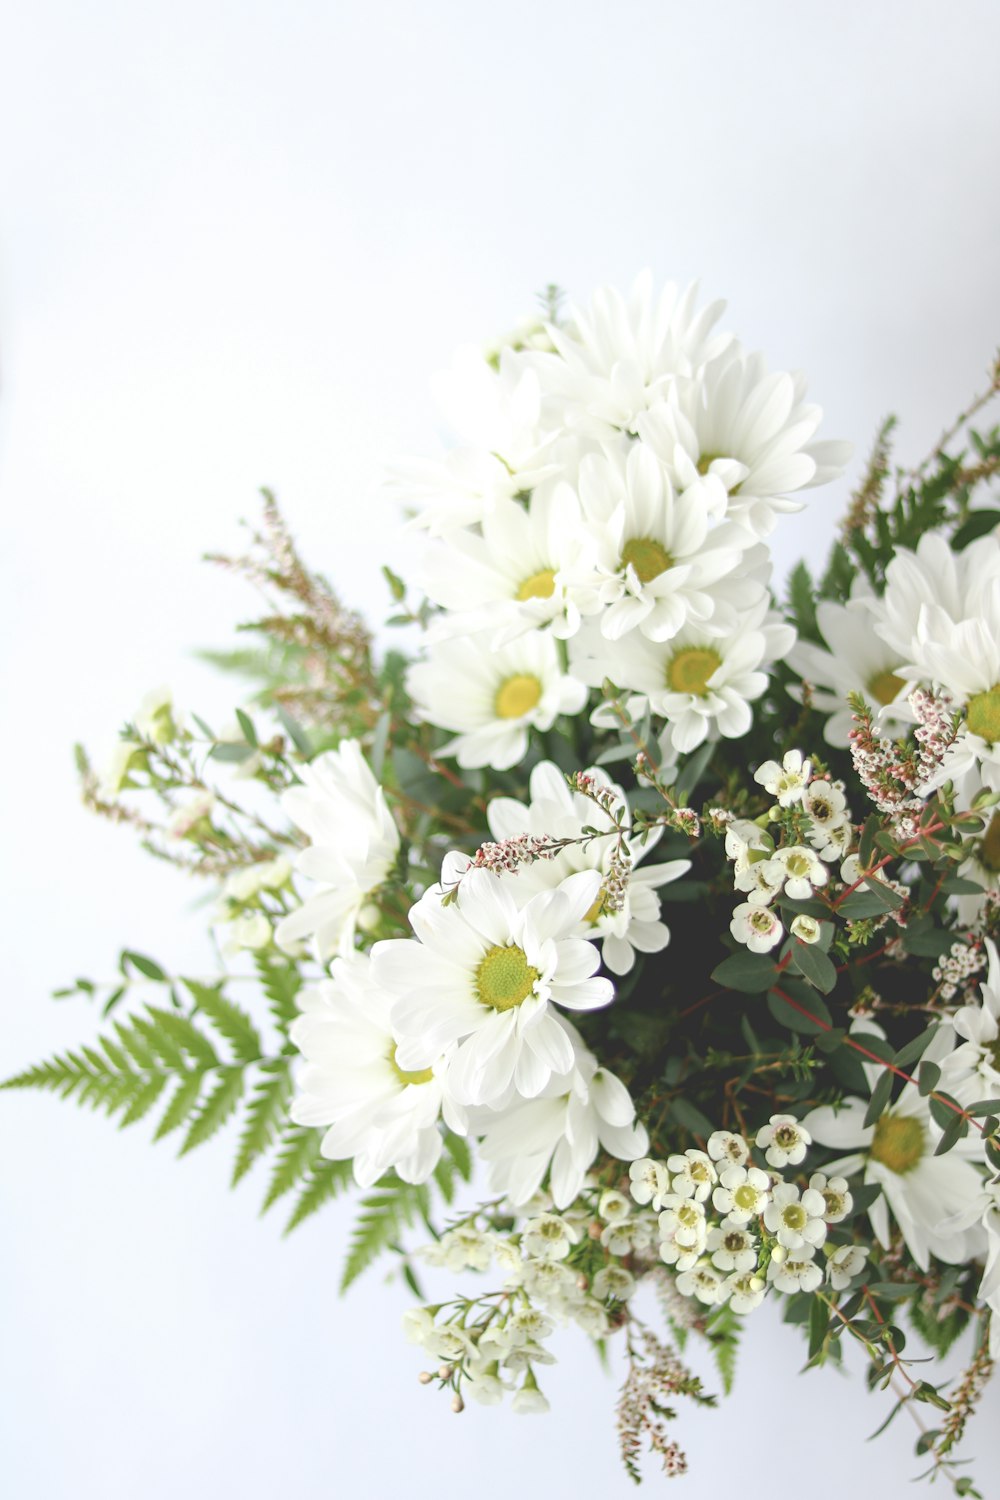 Un jarrón lleno de flores blancas y vegetación